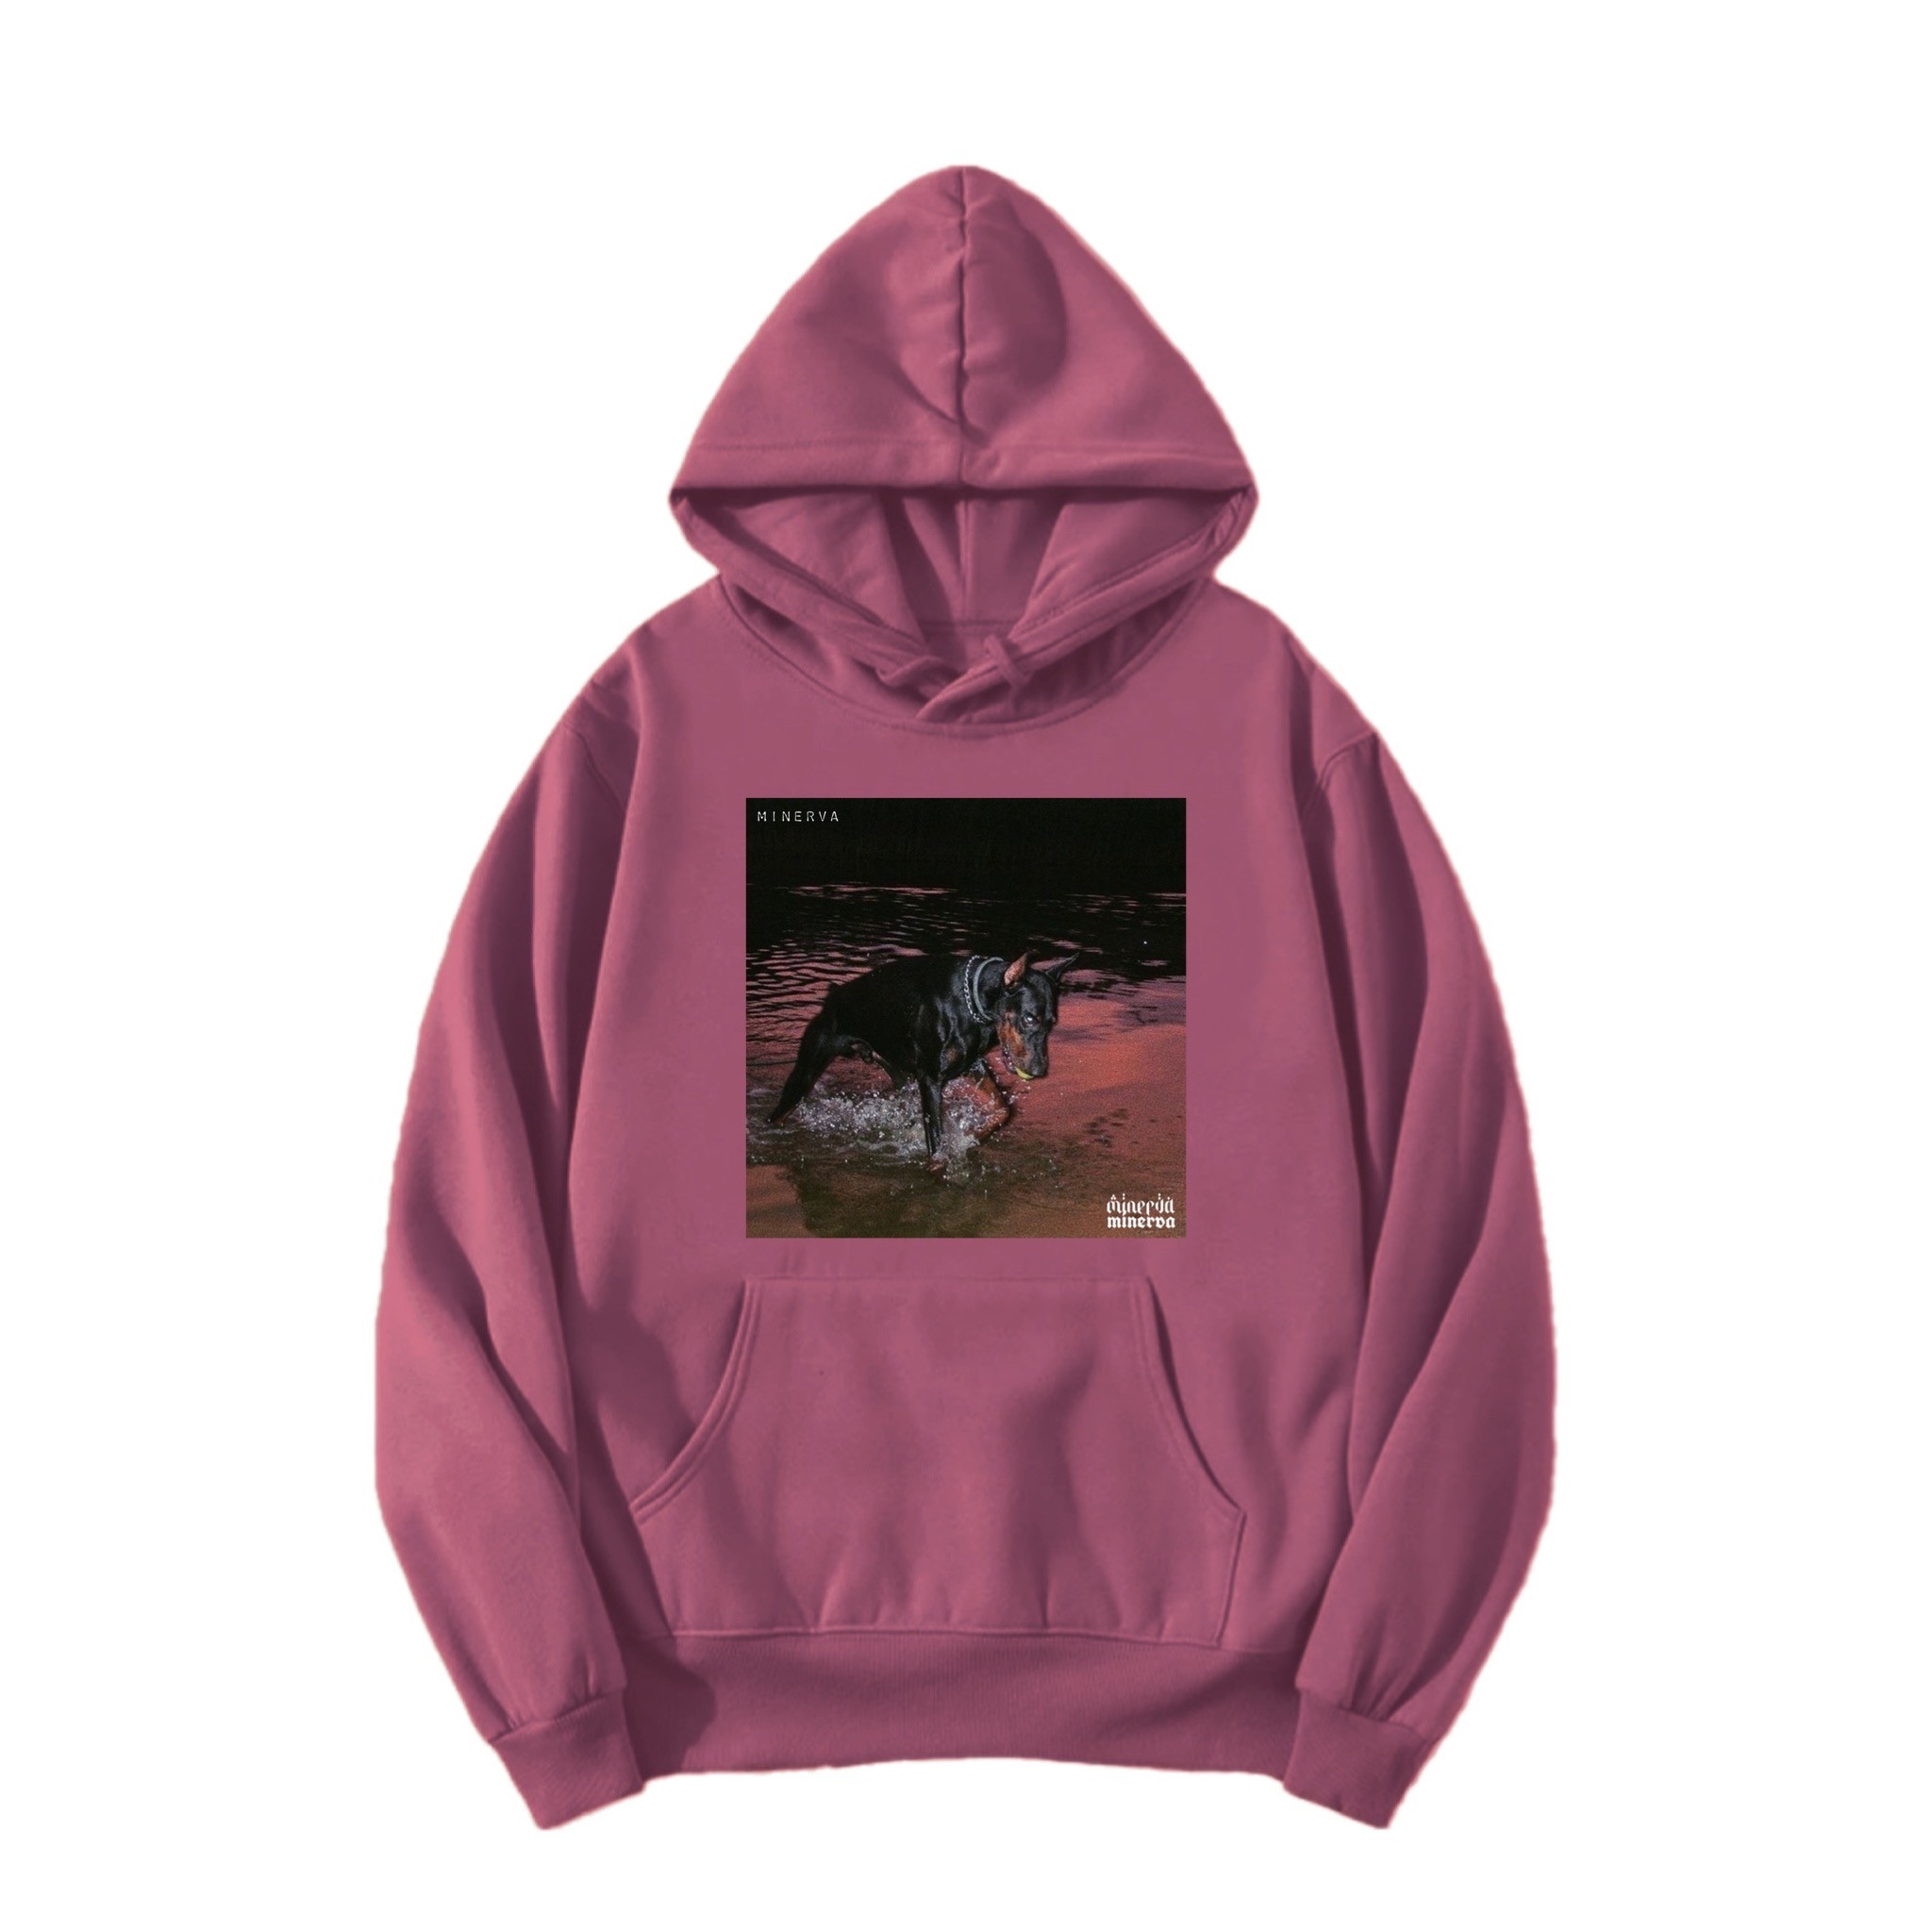 SAVAGE rose regular fit printed hoodie